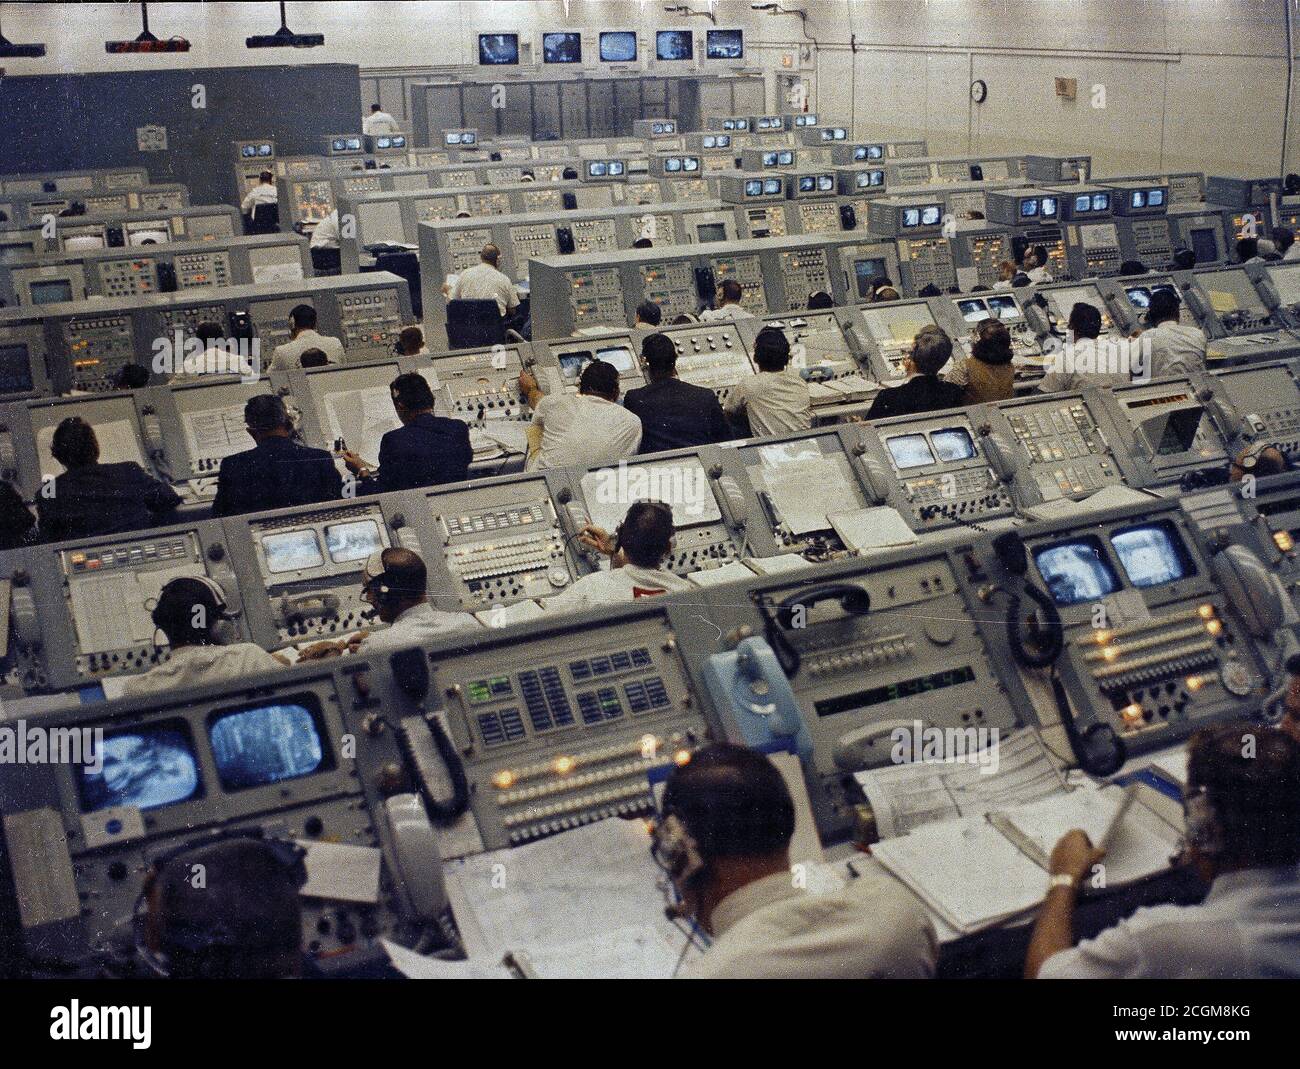 Cette photographie montre un centre de contrôle de lancement au Centre spatial Kennedy au cours de la mission Apollo 8 activités de lancement. Banque D'Images